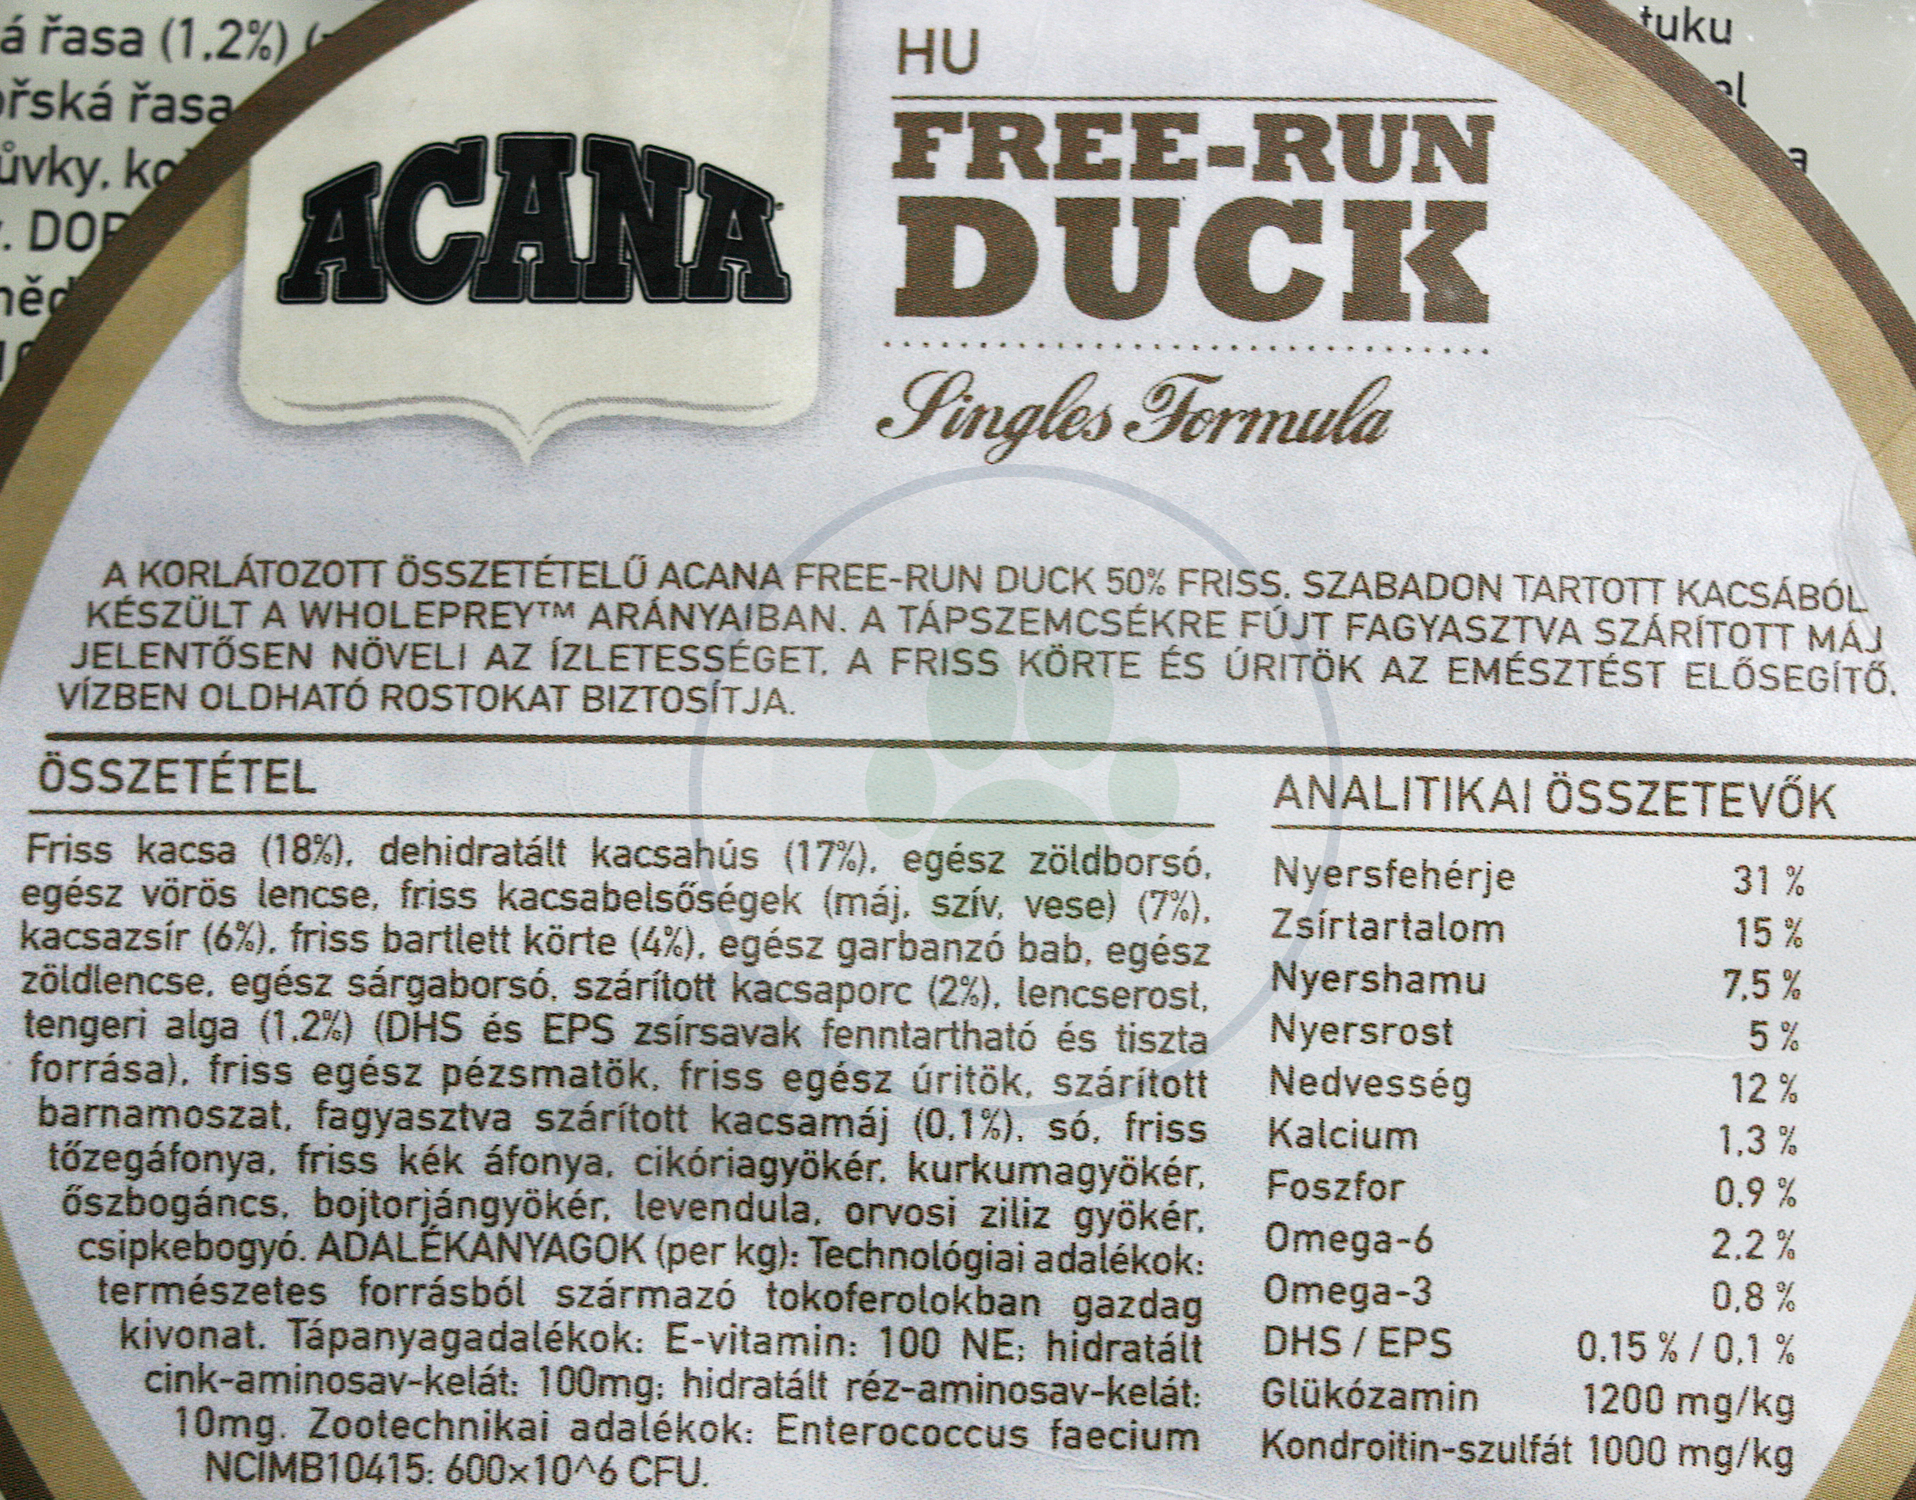 Acana Free-Run Duck - zoom